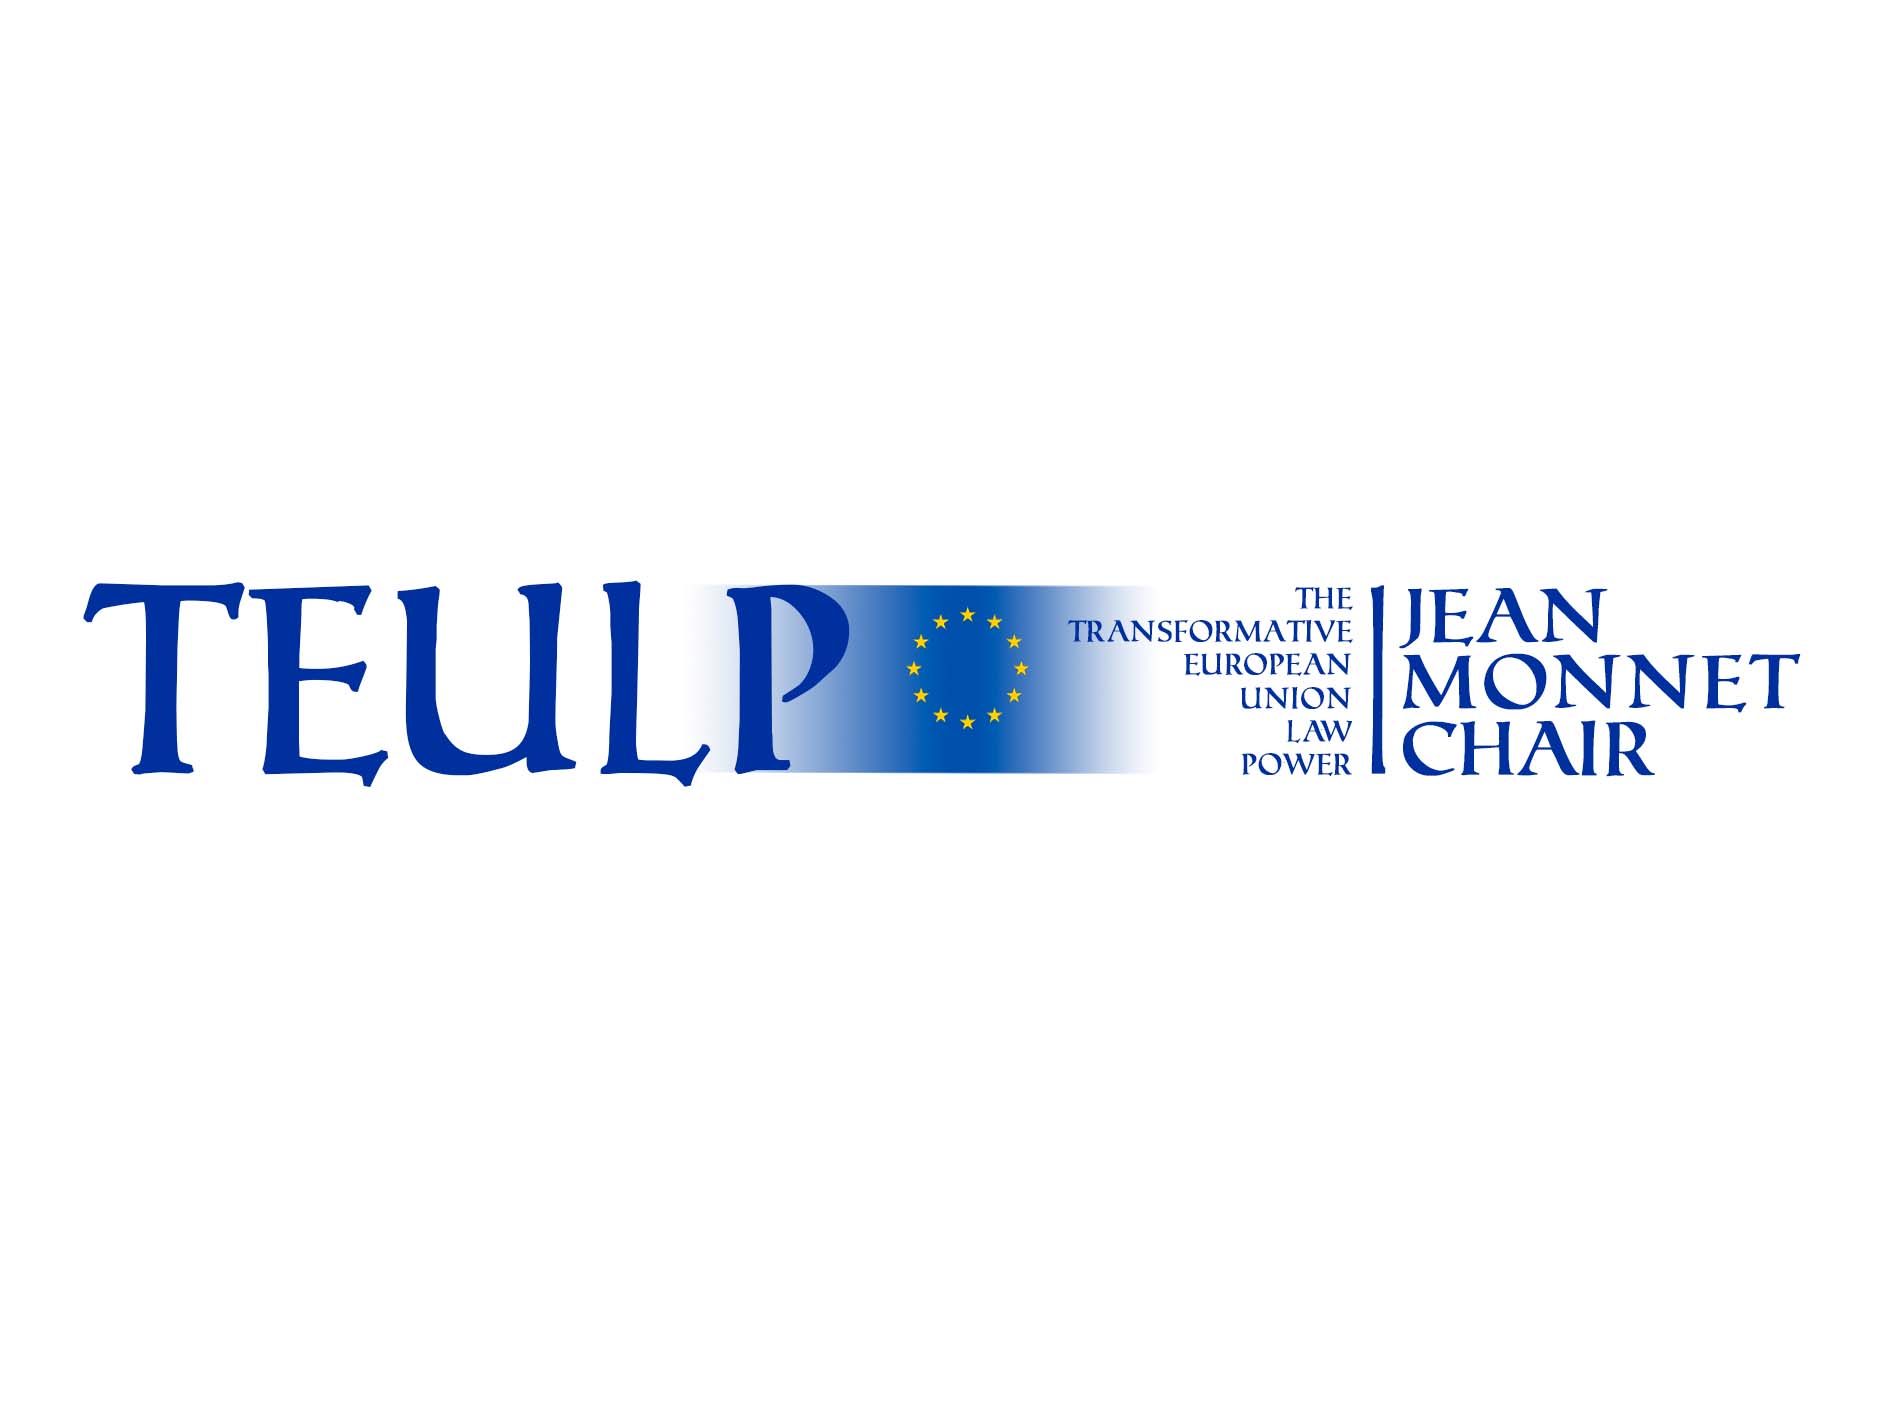 La Comisión Europea concede una Cátedra Jean Monnet al profesor de la Facultad de Derecho de la UMU Juan Jorge Piernas